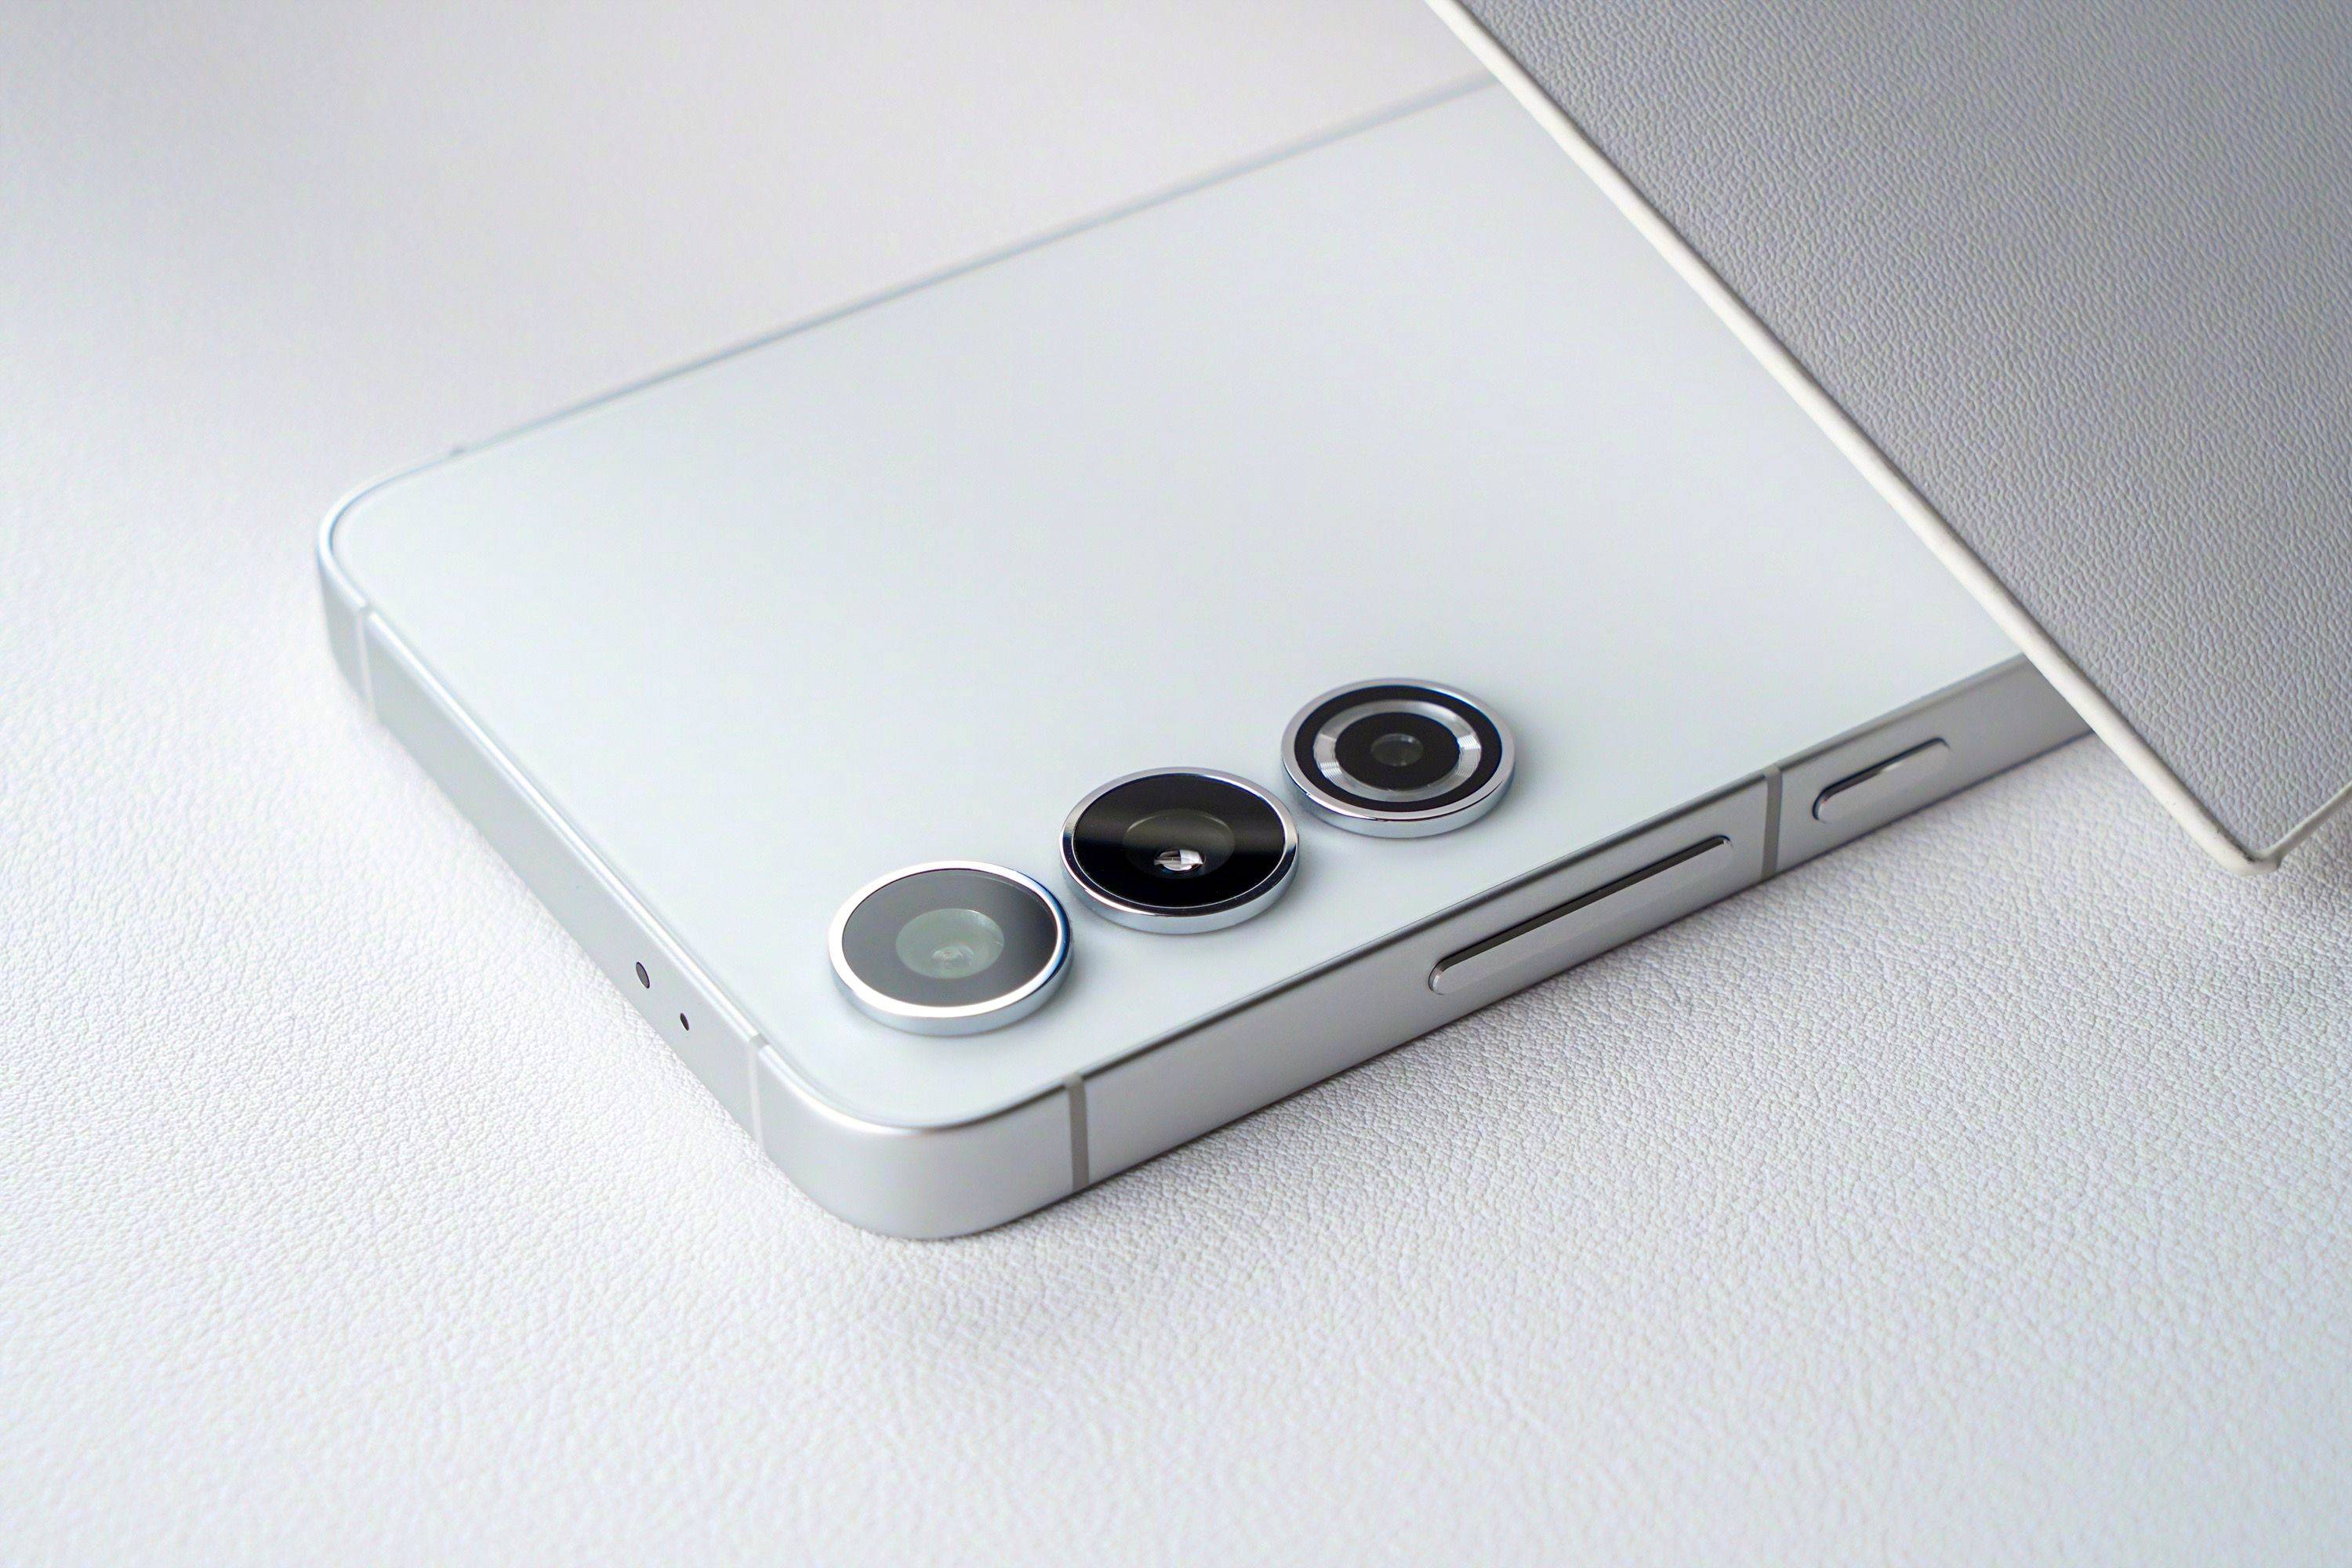 W stylu iPhone'a: Samsung Galaxy S24 i S24+ otrzymają zaktualizowany design z płaskimi ramkami bocznymi